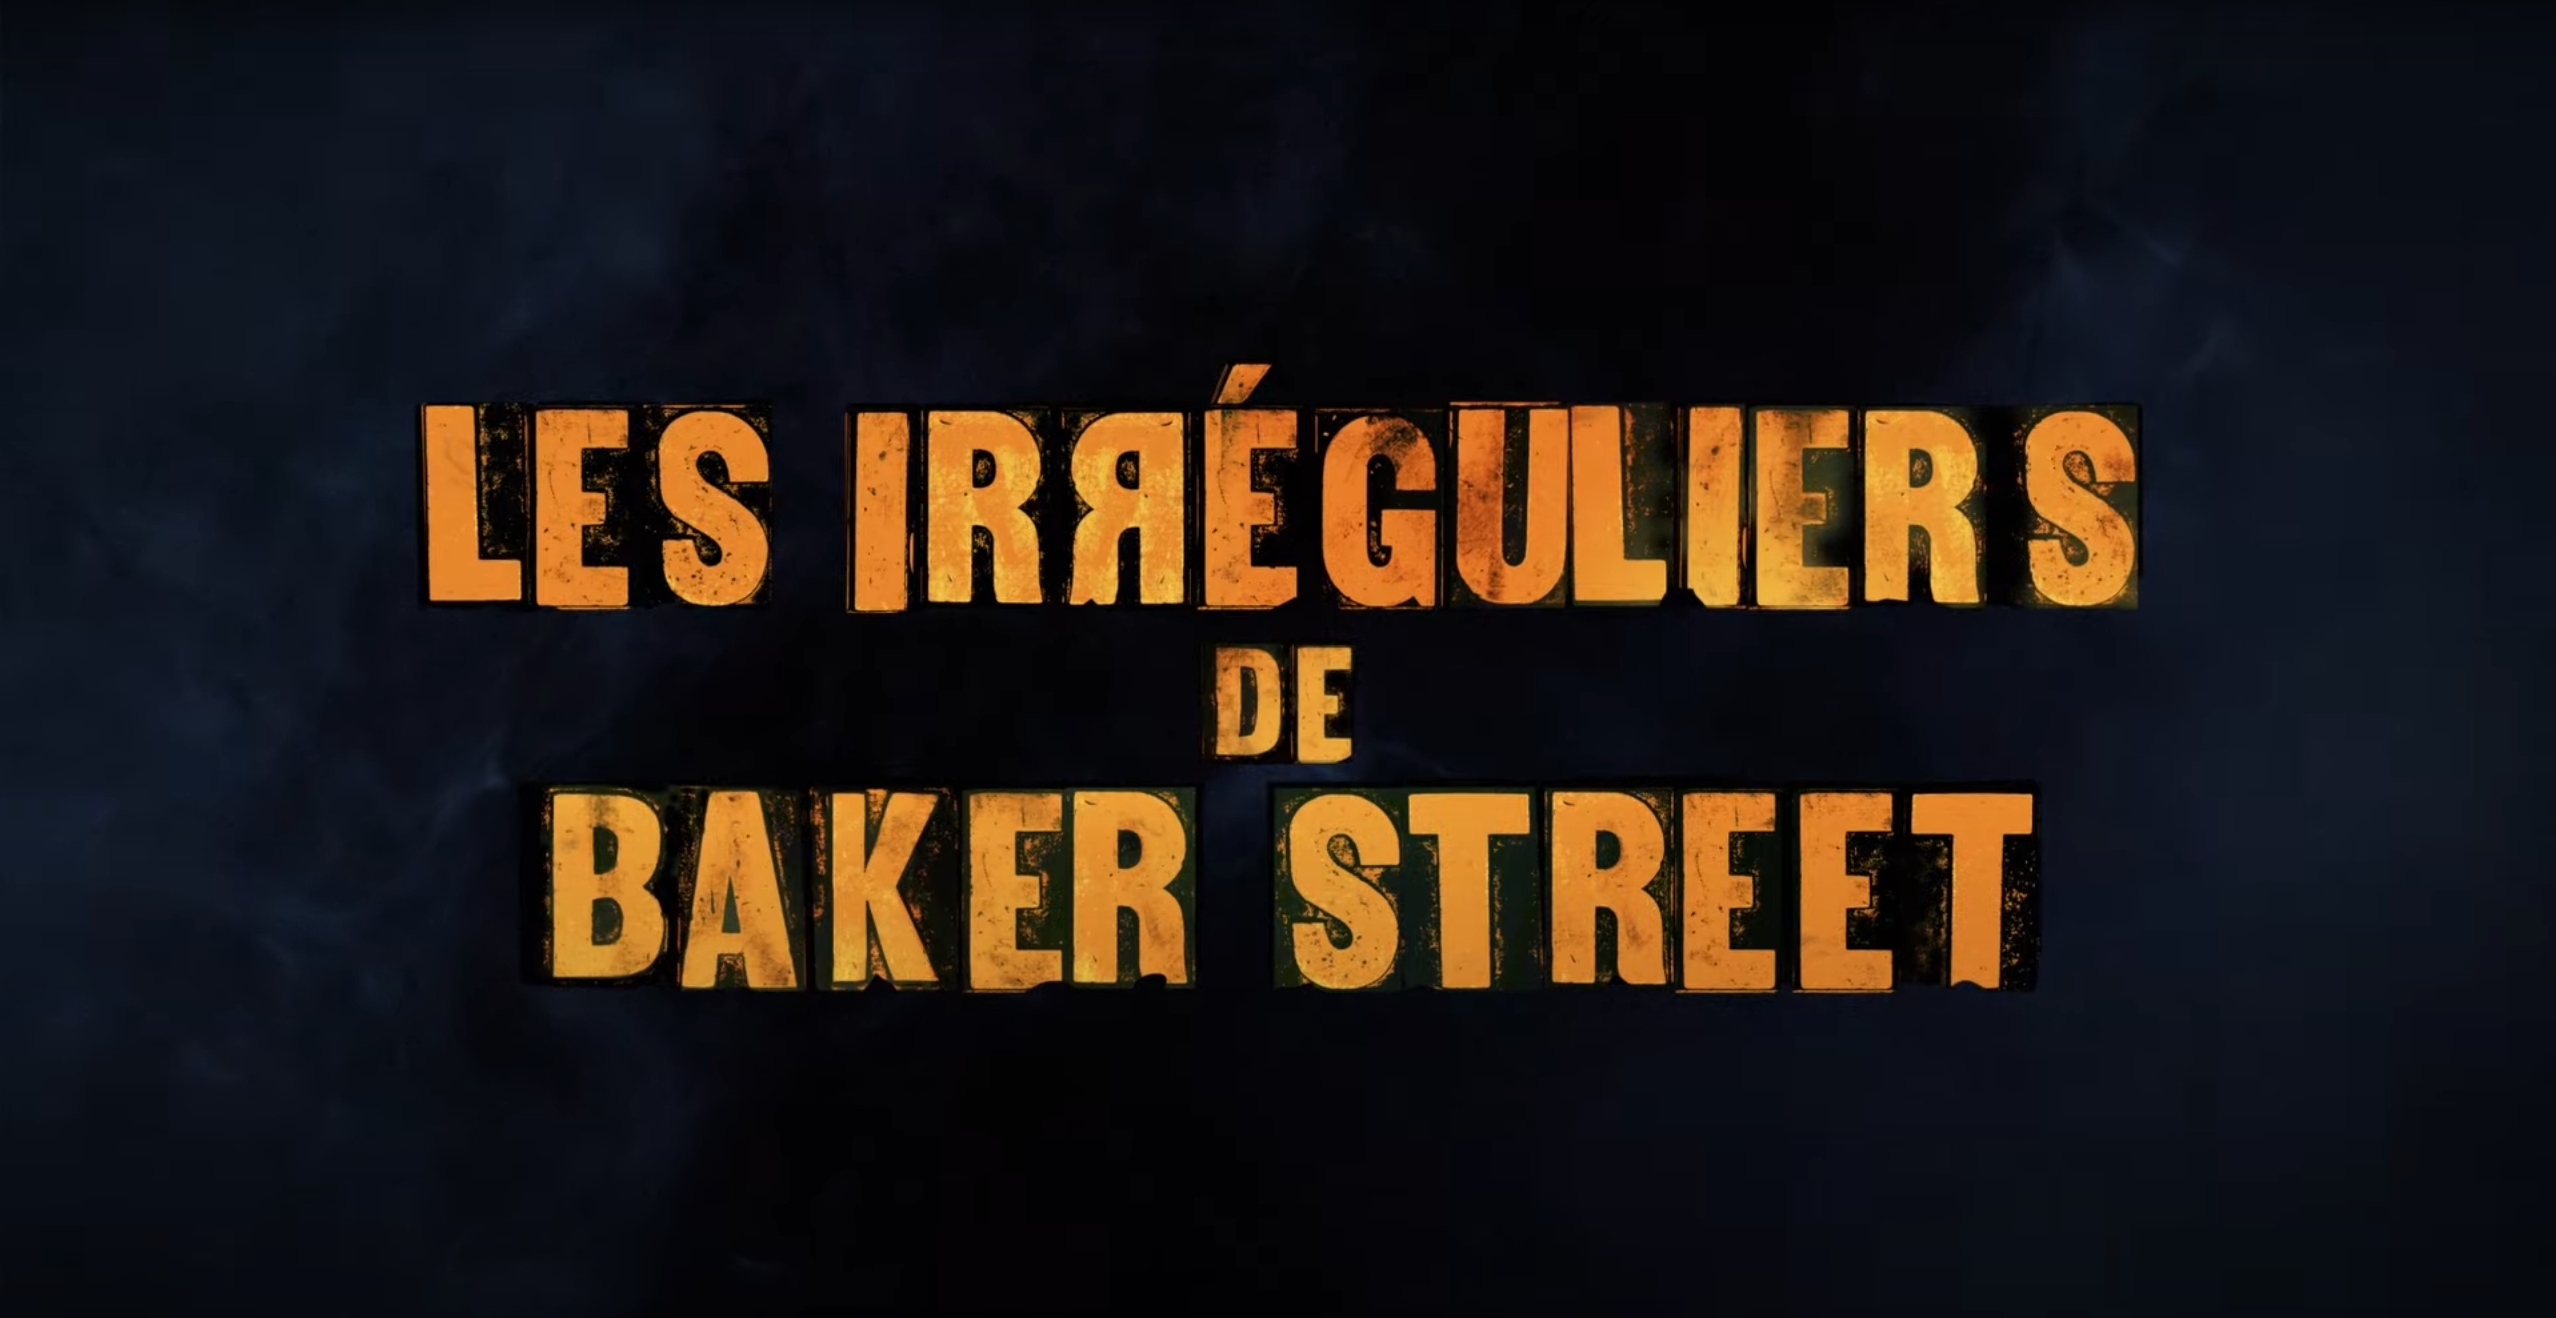 Netflix tease Les Irréguliers de Baker Street, une série où se mêlent Sherlock Holmes et éléments surnaturels